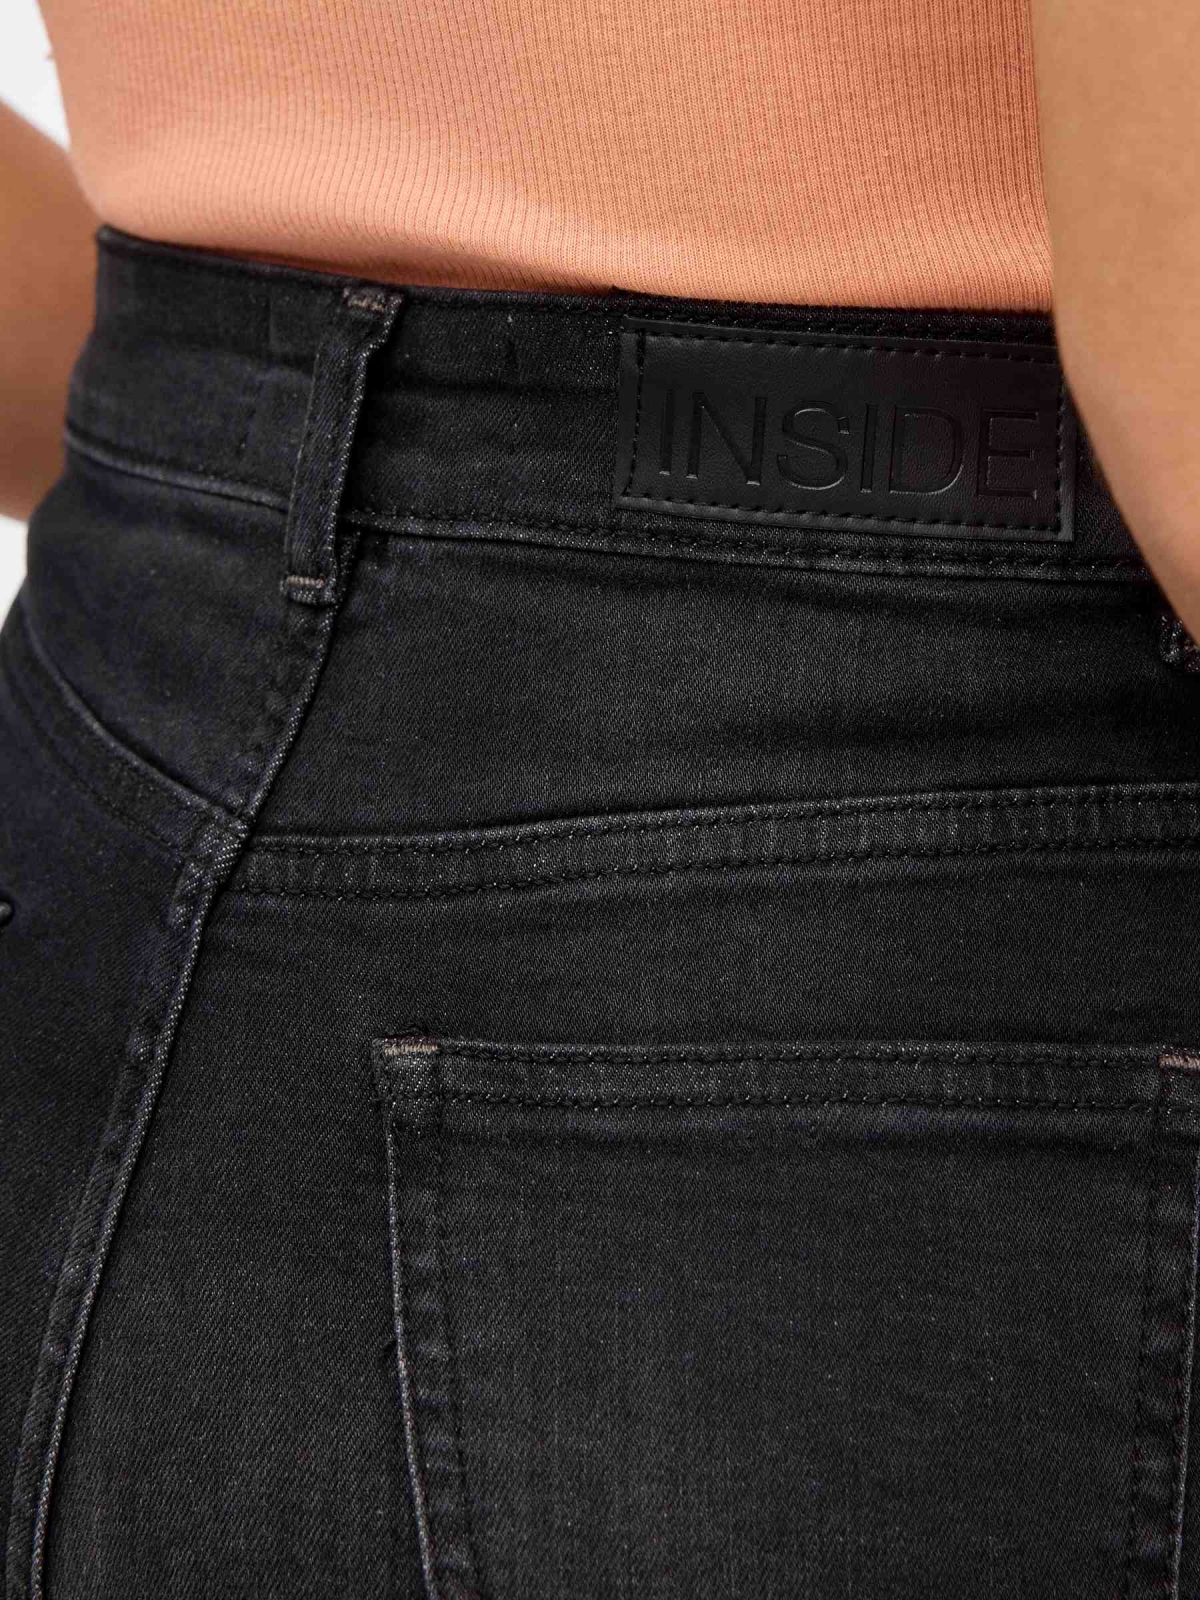 Denim high rise slim shorts black detail view